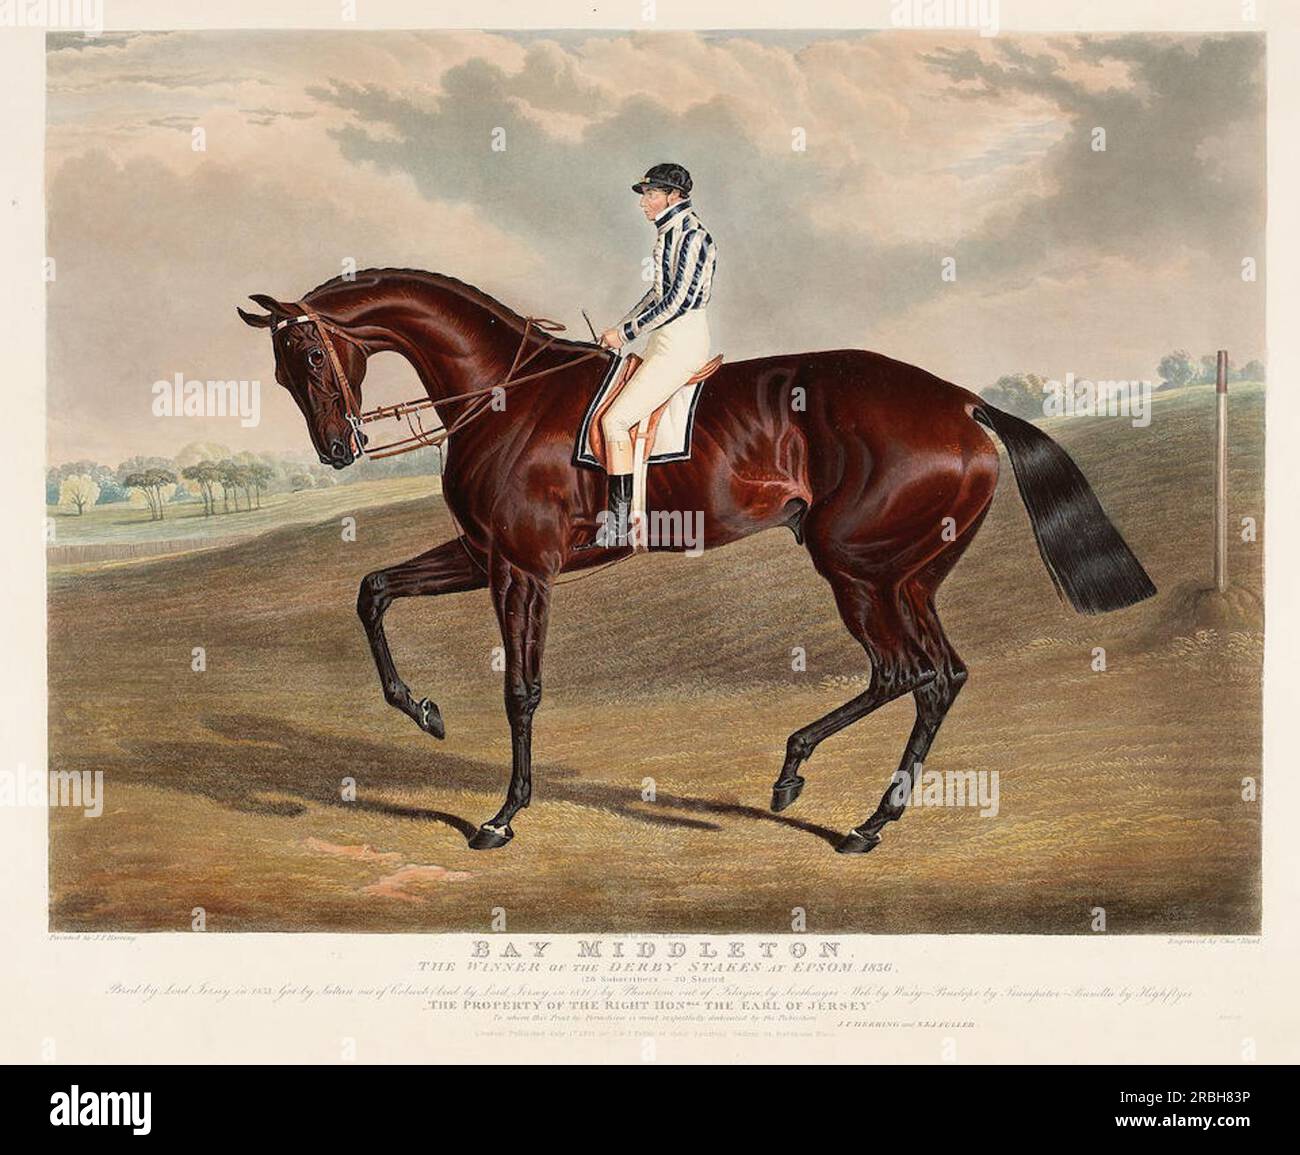 'Bay Middleton' Winner of the Derby in 1836 by John Frederick Herring Sr. Stock Photo